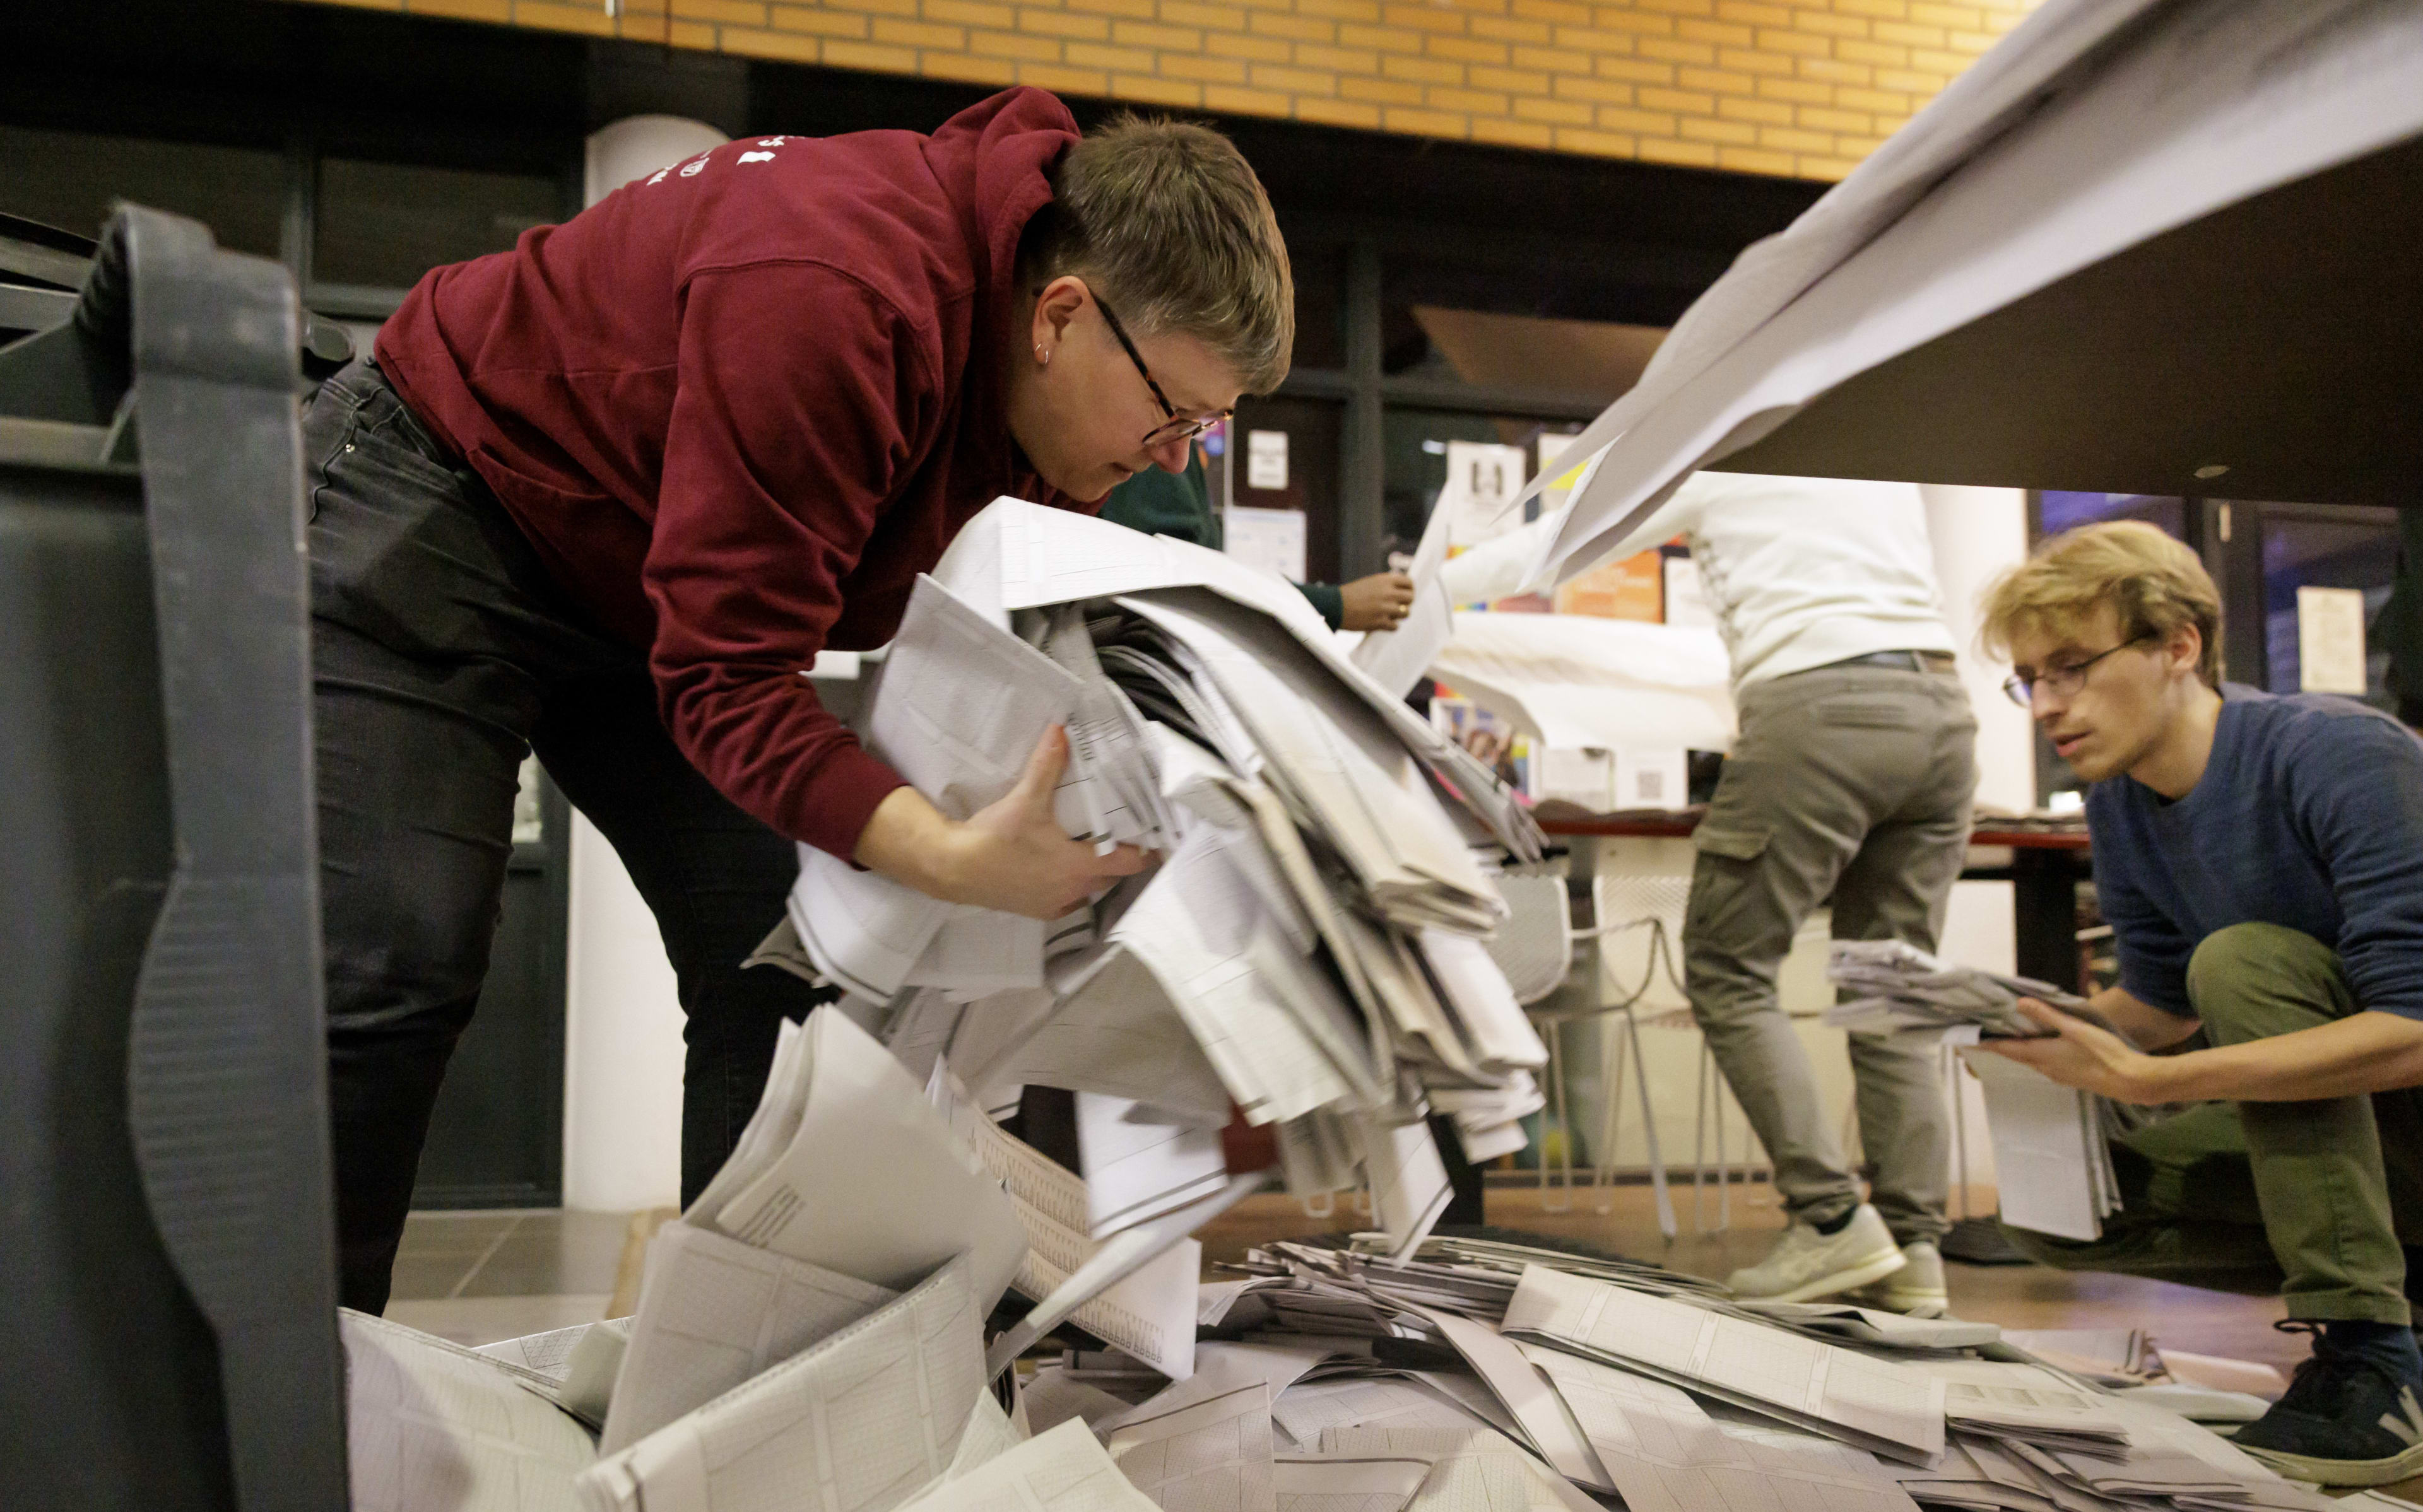 Stemmenteller kotst op stapel VVD-stemmen en wordt naar huis gestuurd